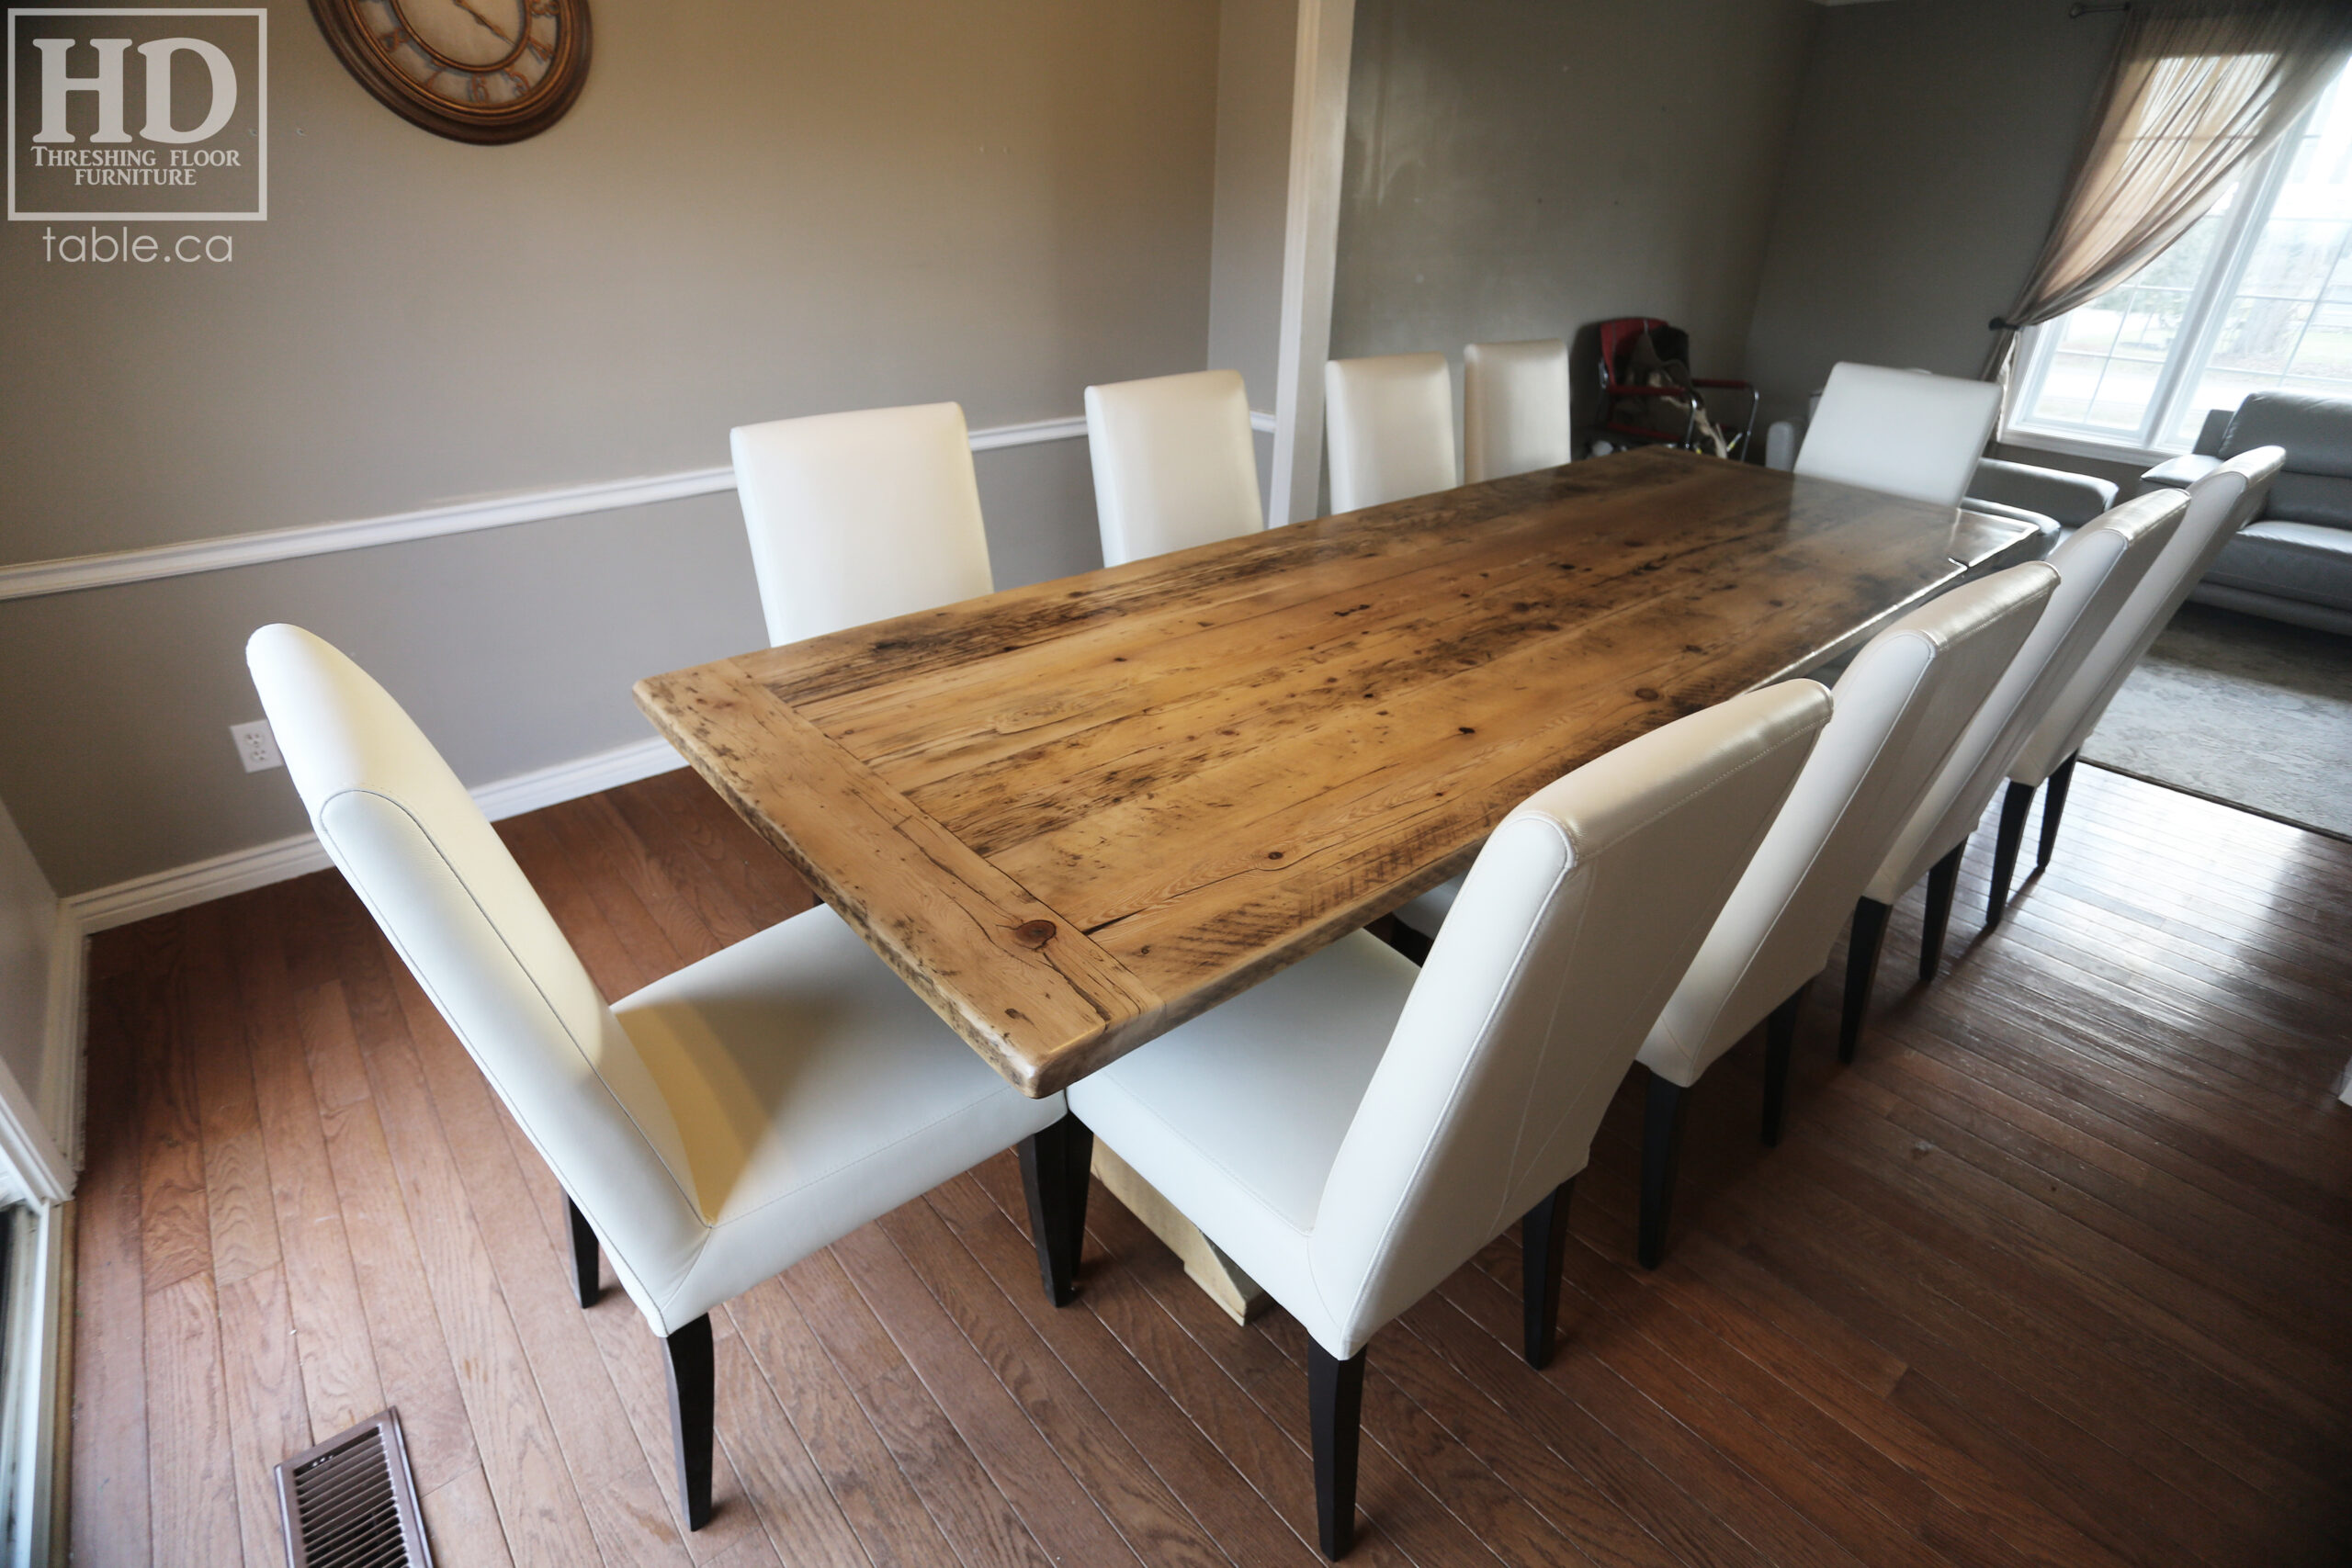 Ontario Pioneer Barnwood Table by HD Threshing Floor Furniture / www.table.ca